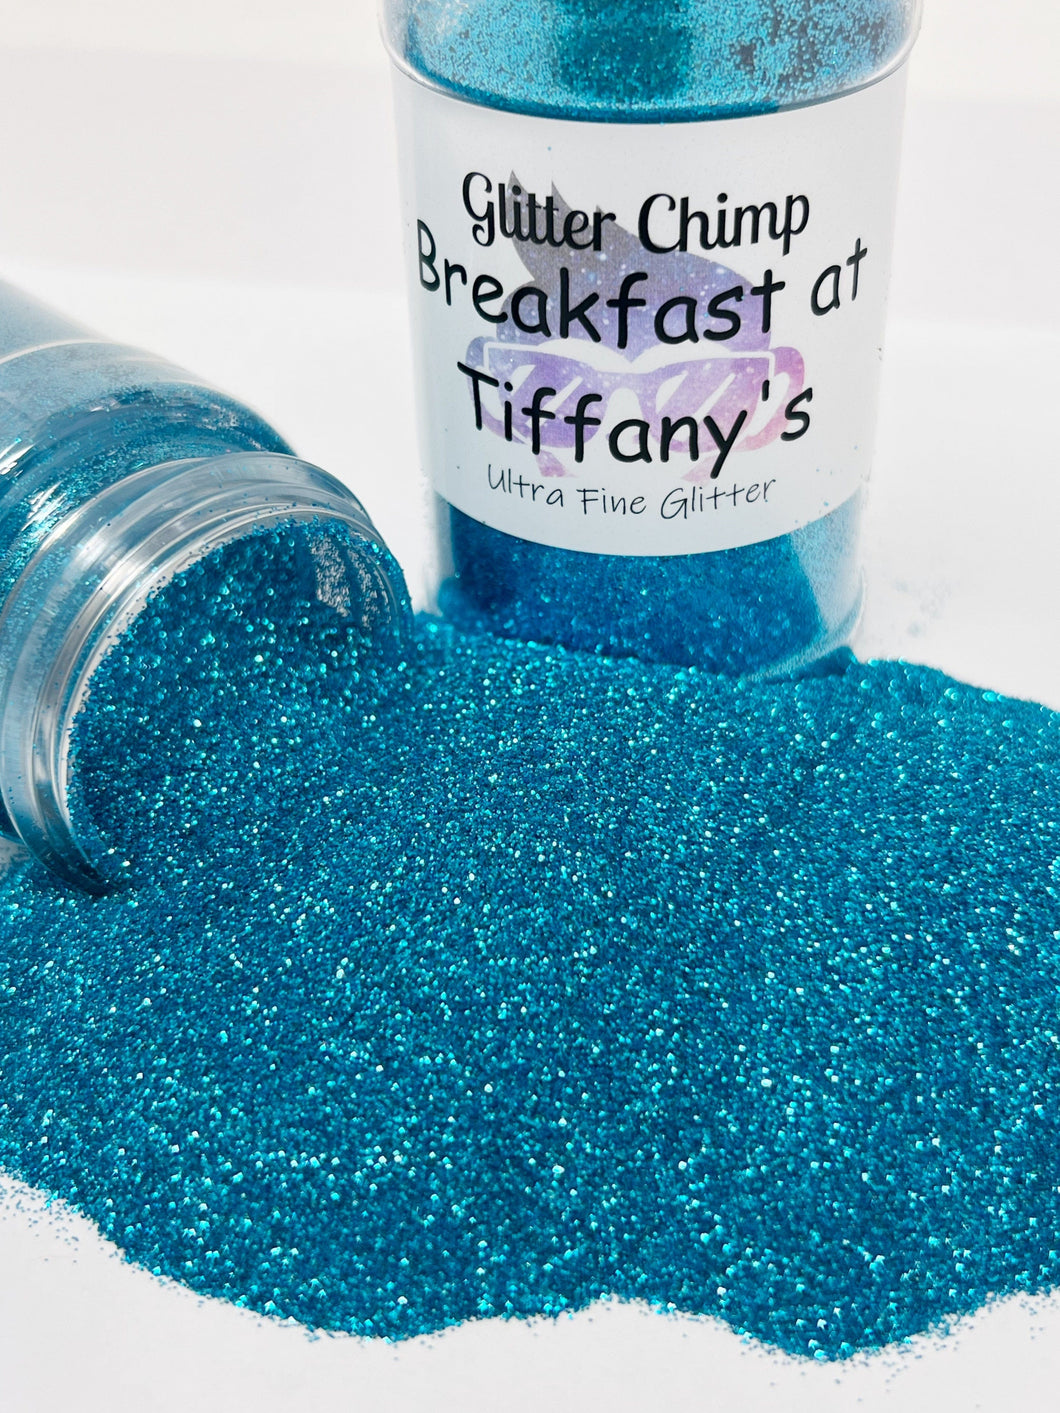 Breakfast at Tiffany's - Ultra Fine Glitter